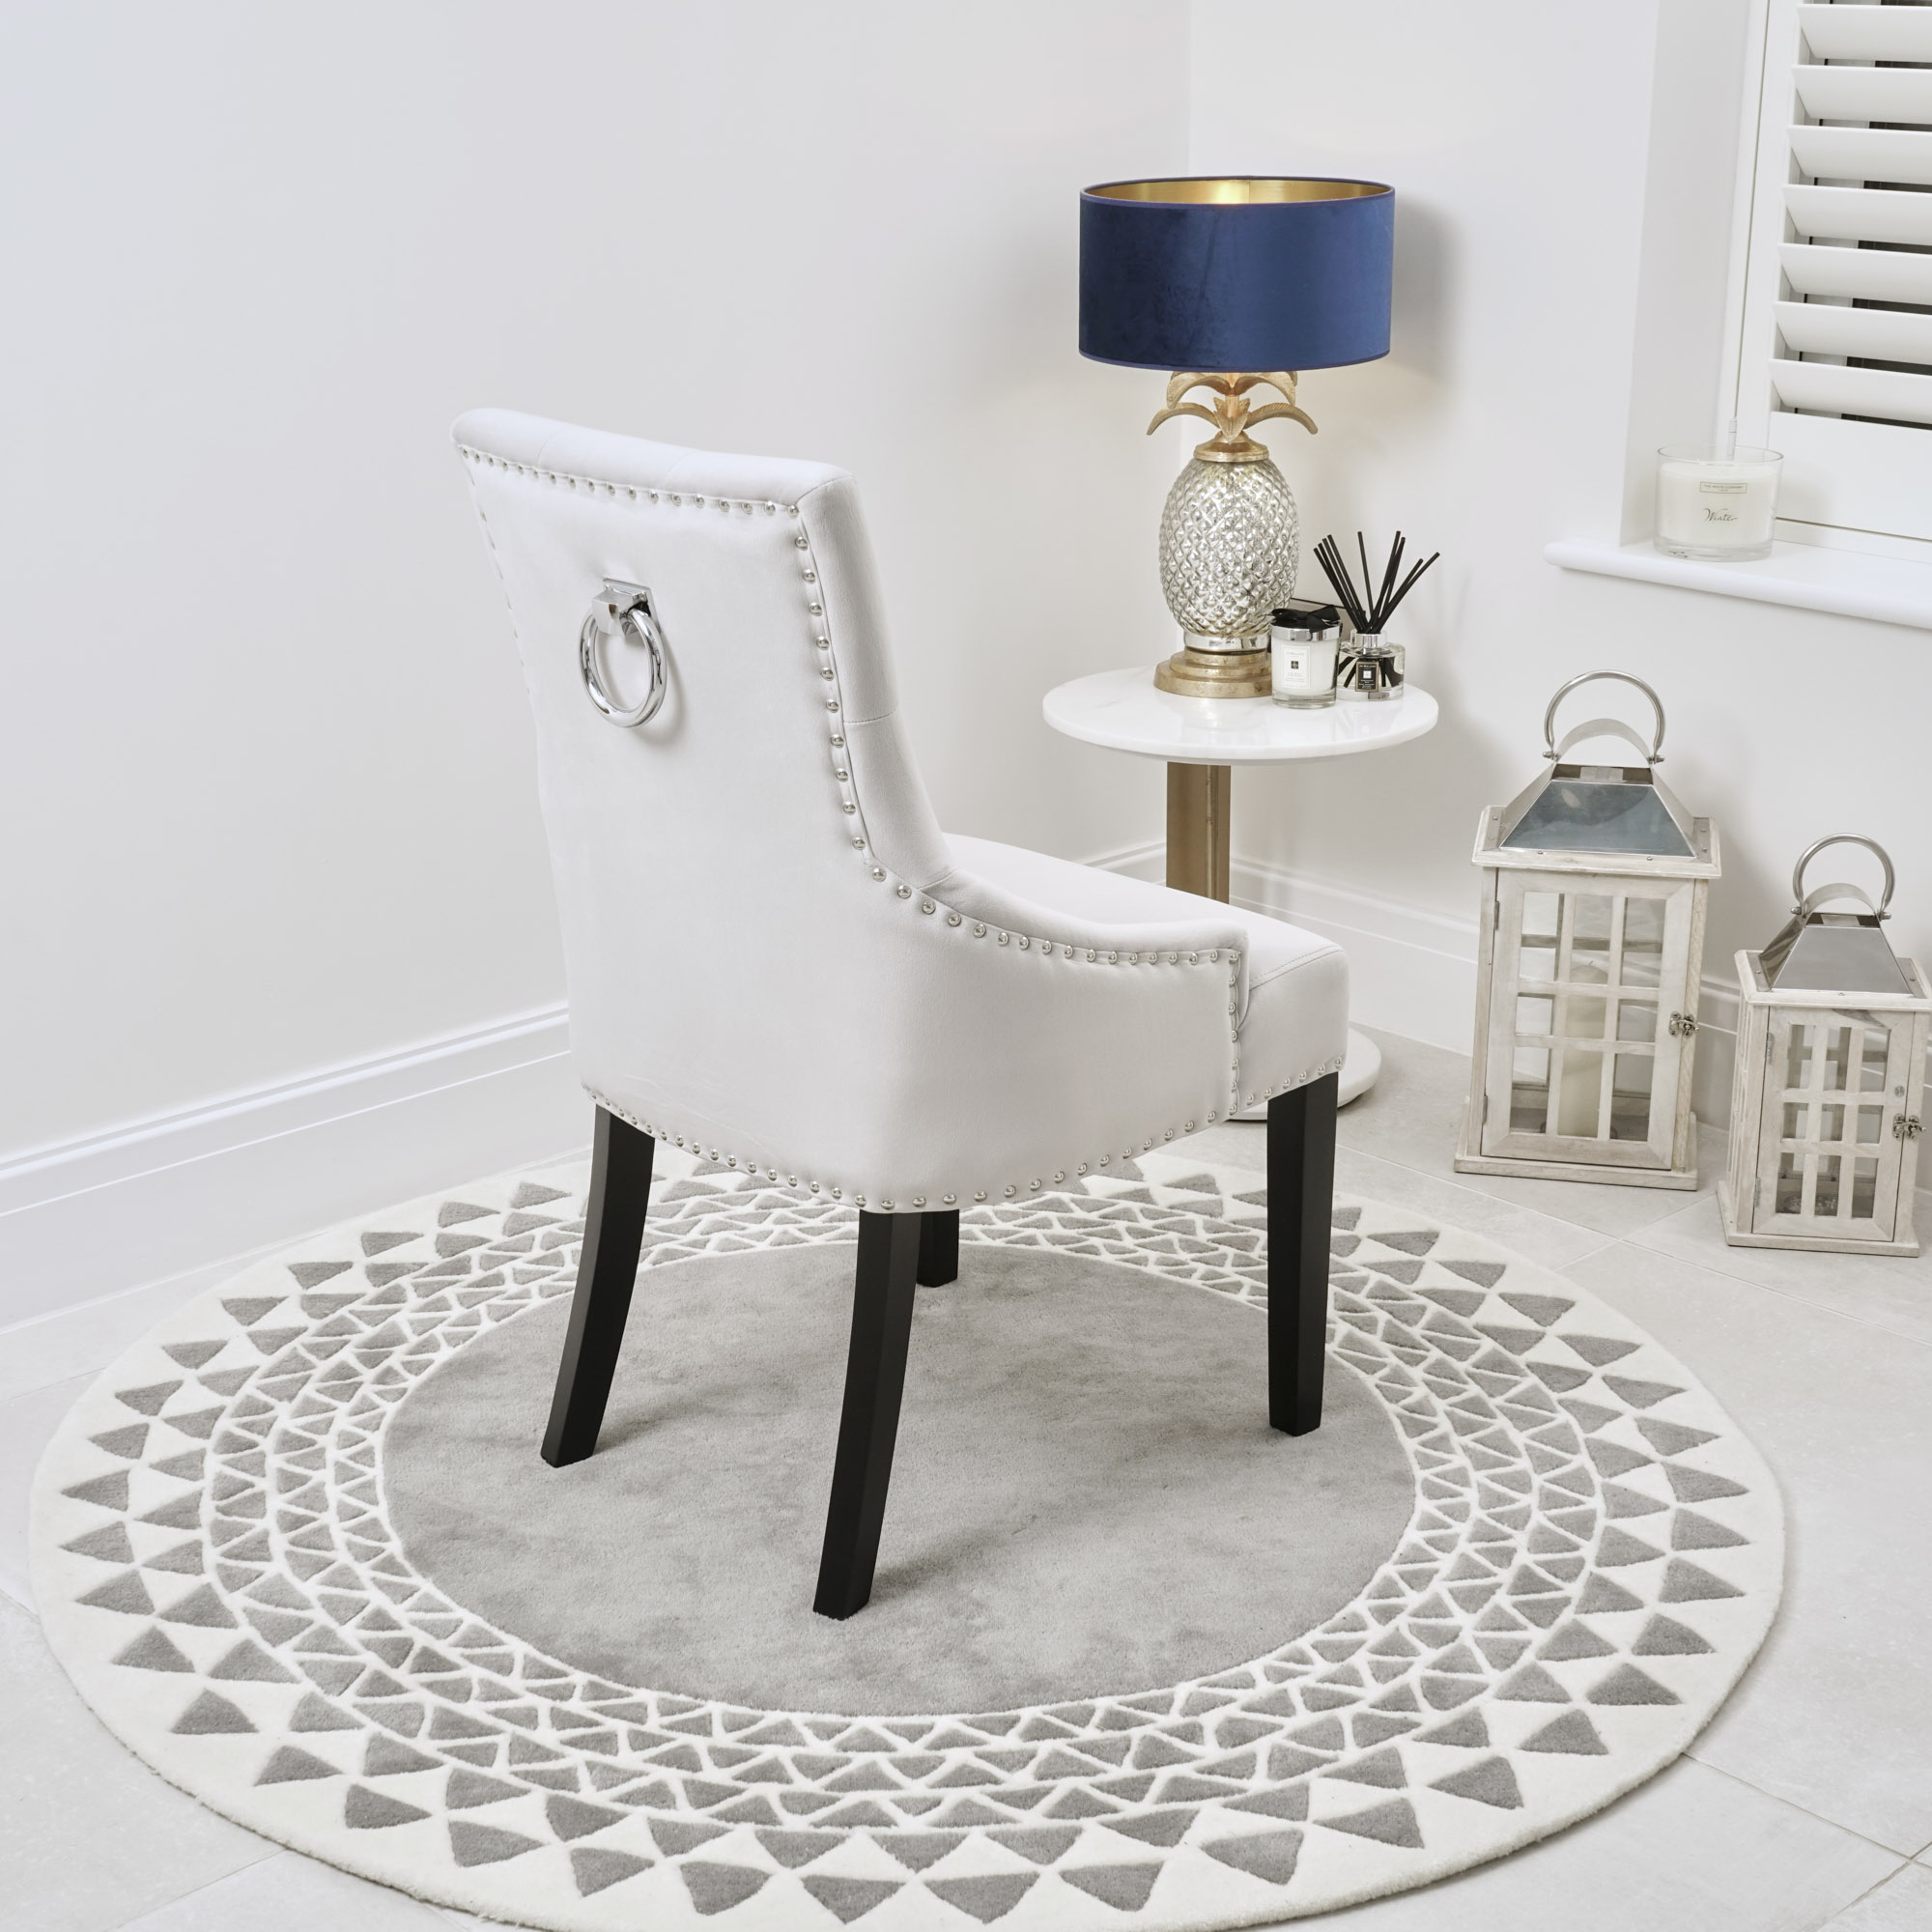 Luxury Chelsea Light Grey Velvet Dining Scoop Back Room Chair – Black Legs